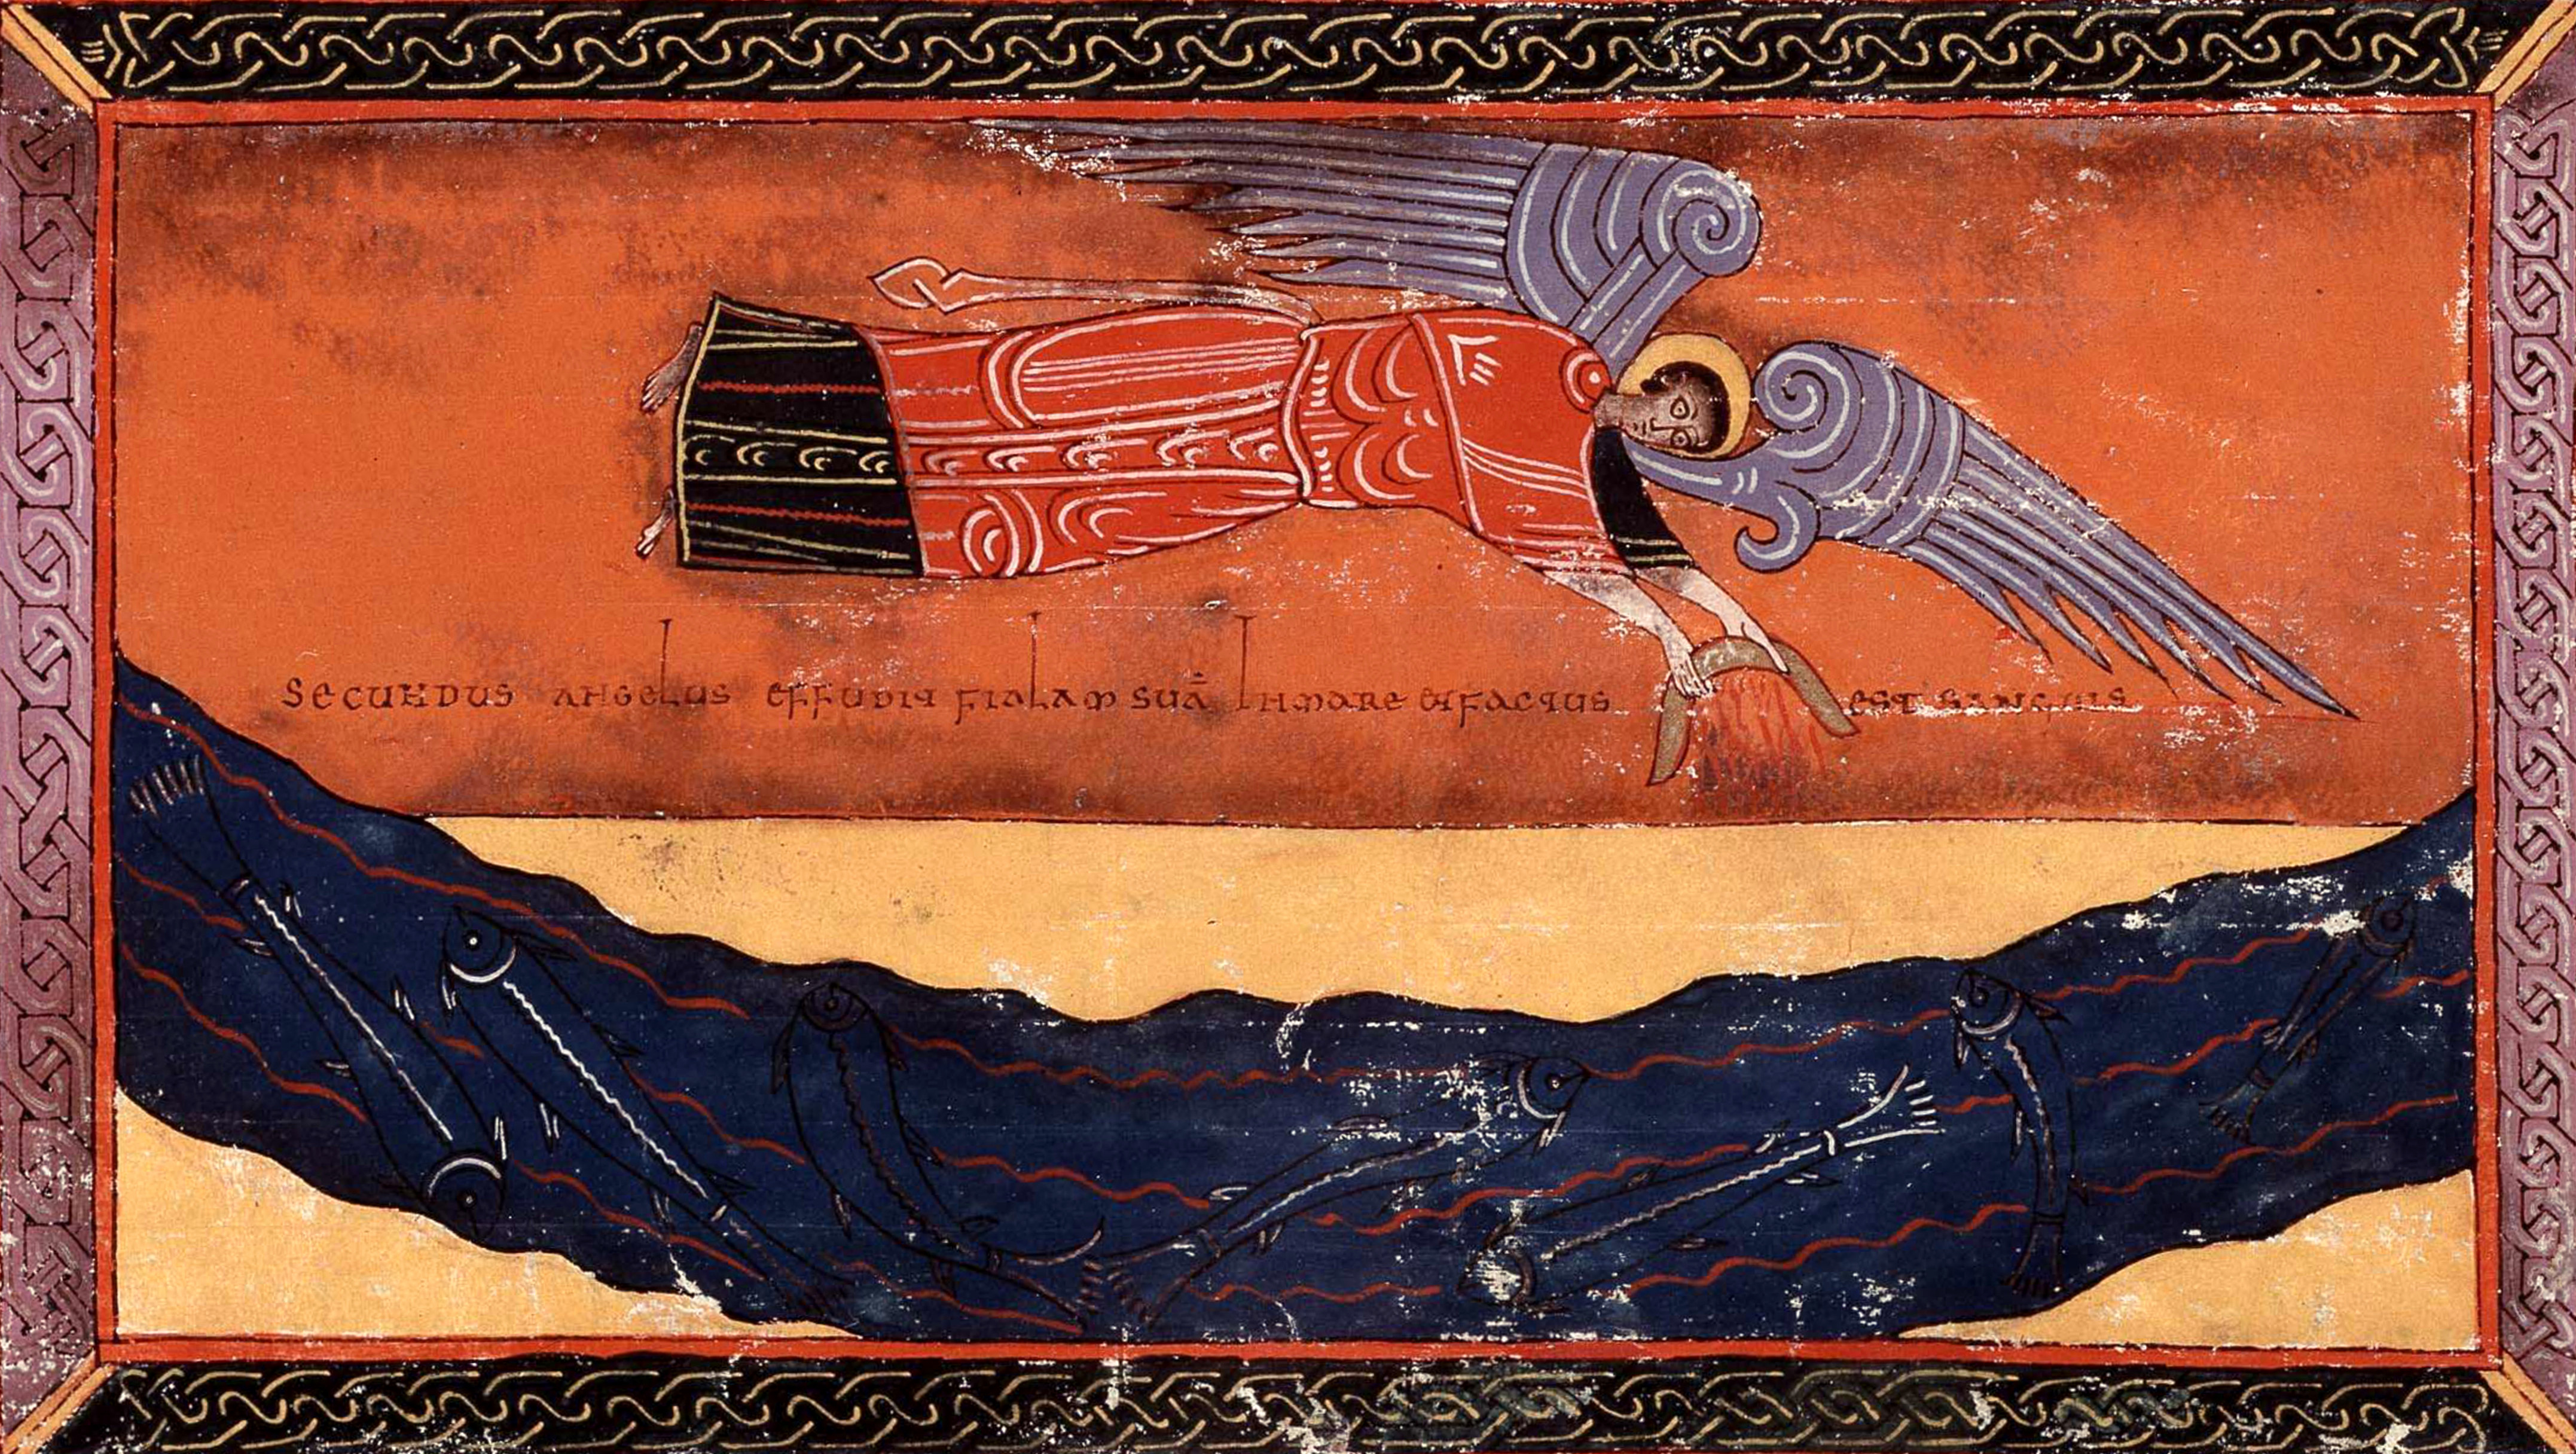 Beatus de Facundus, p. 432 – La deuxième coupe répandue dans la mer, le fléau du sang (Ap 16, 3.5-7).